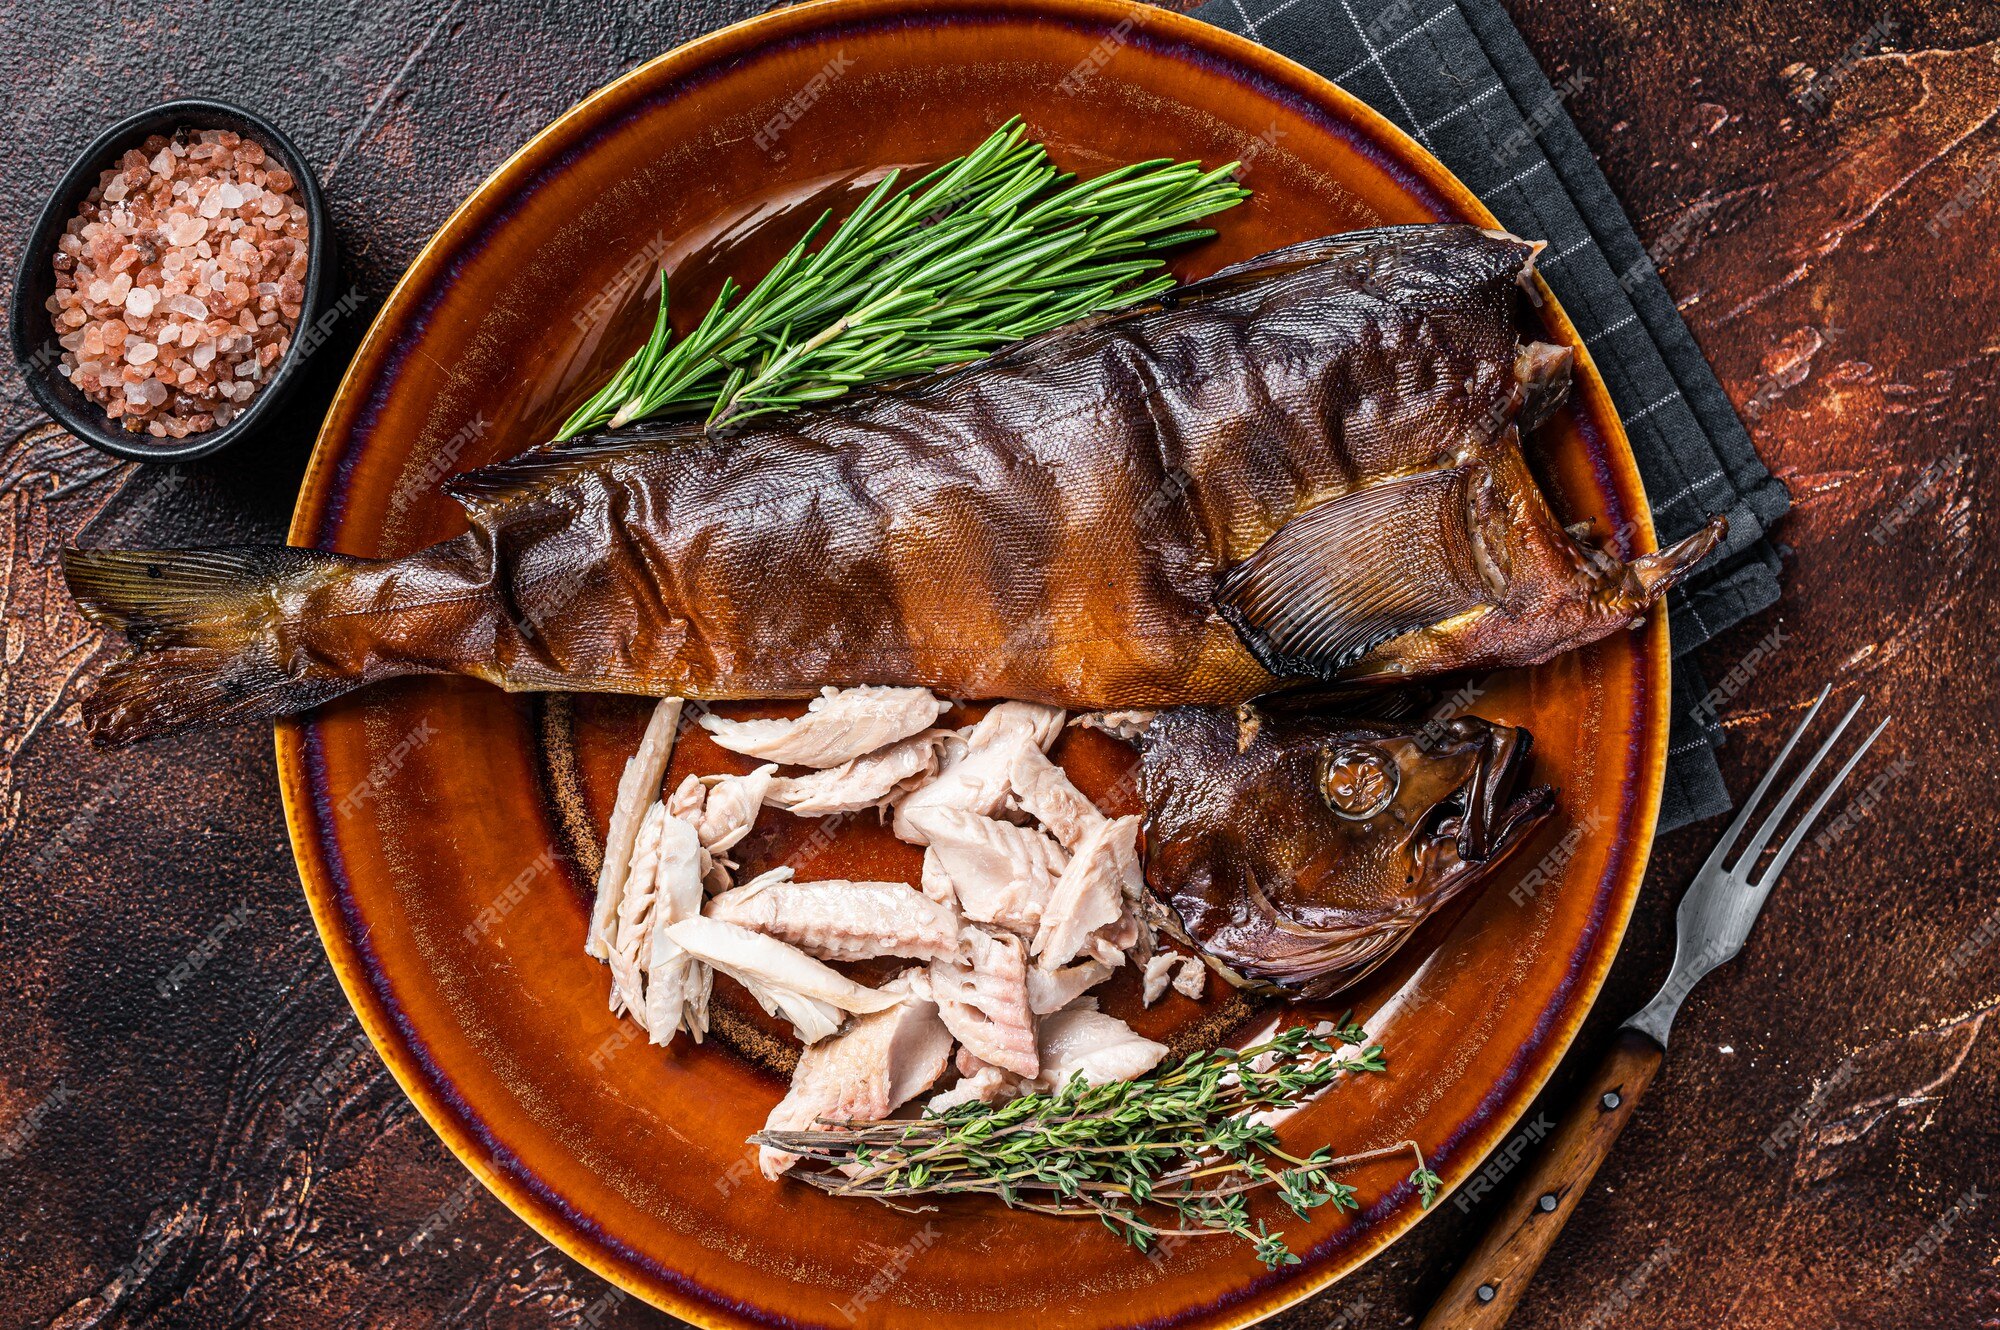 álbum de recortes Inodoro Gallo Filete de perca de pescado ahumado caliente en plato rústico con tomillo.  fondo oscuro. vista superior. | Foto Premium